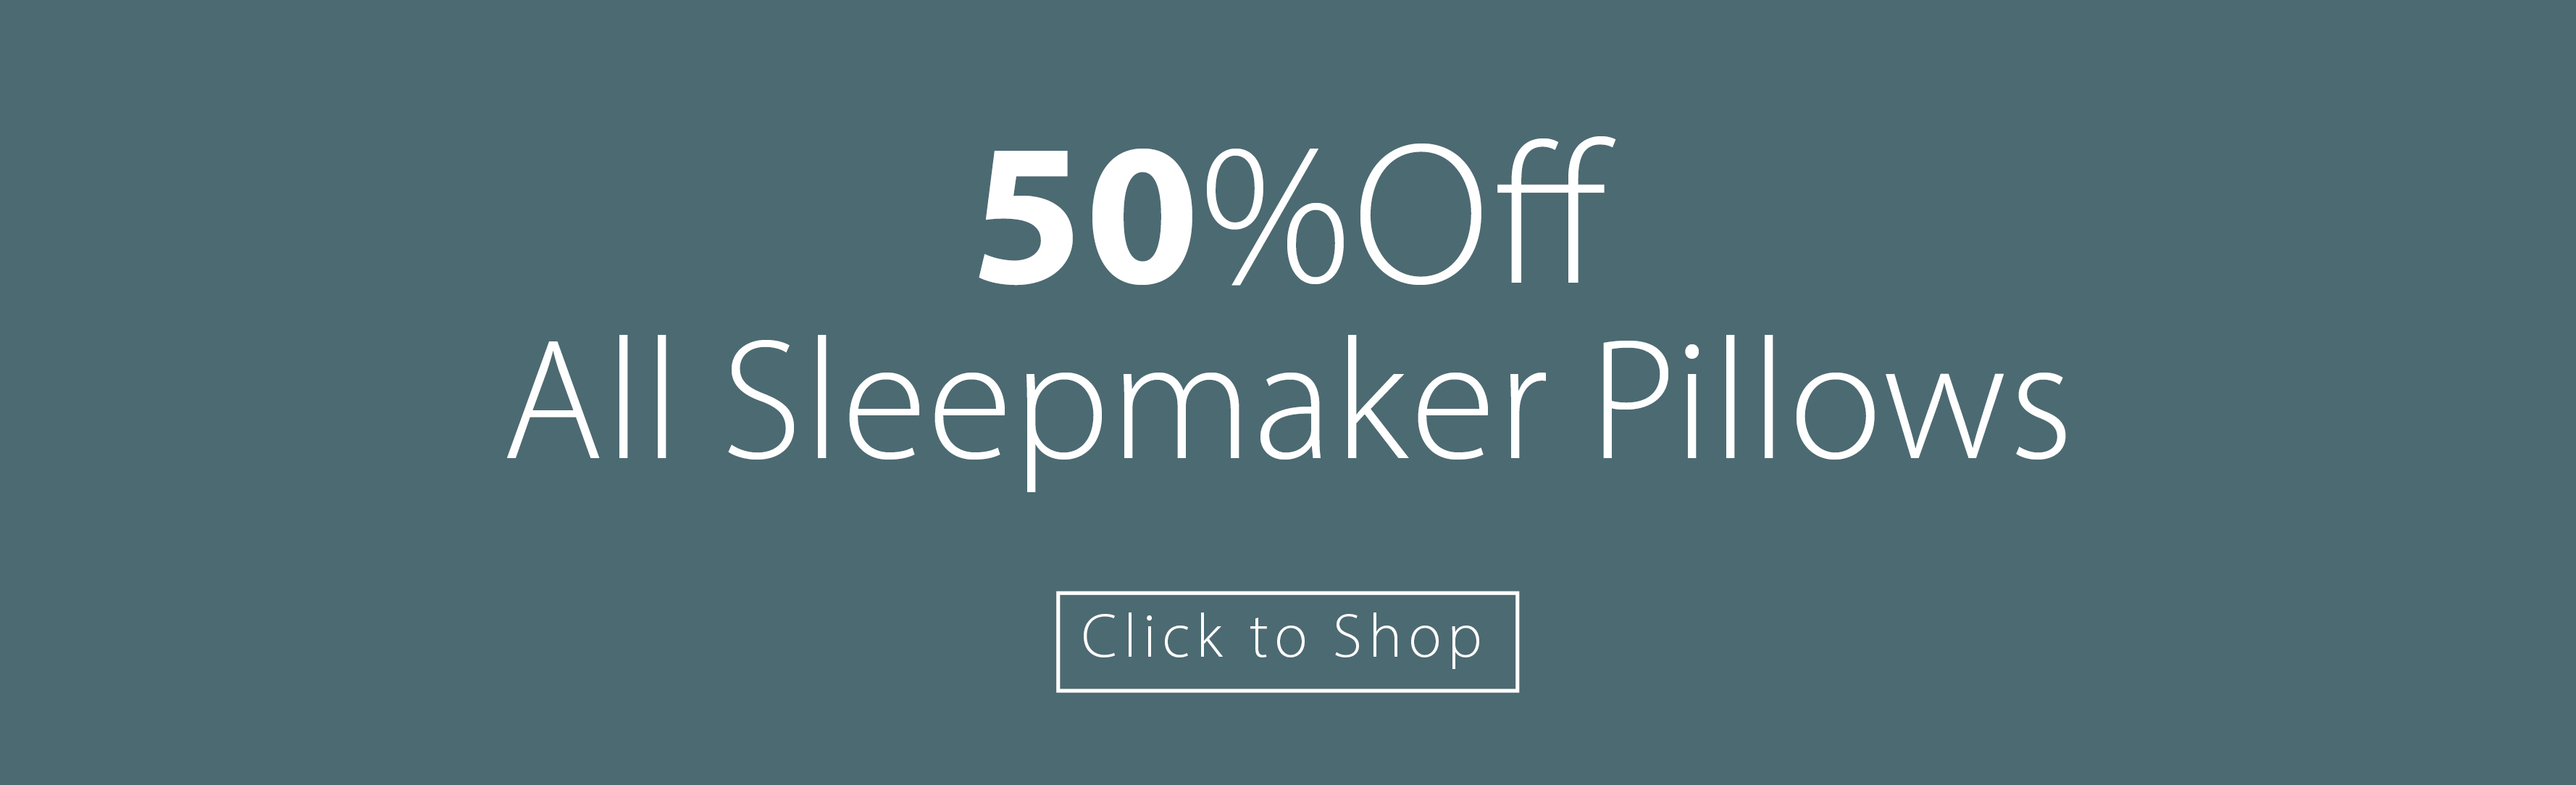 50% Off All Sleepmaker Pillows